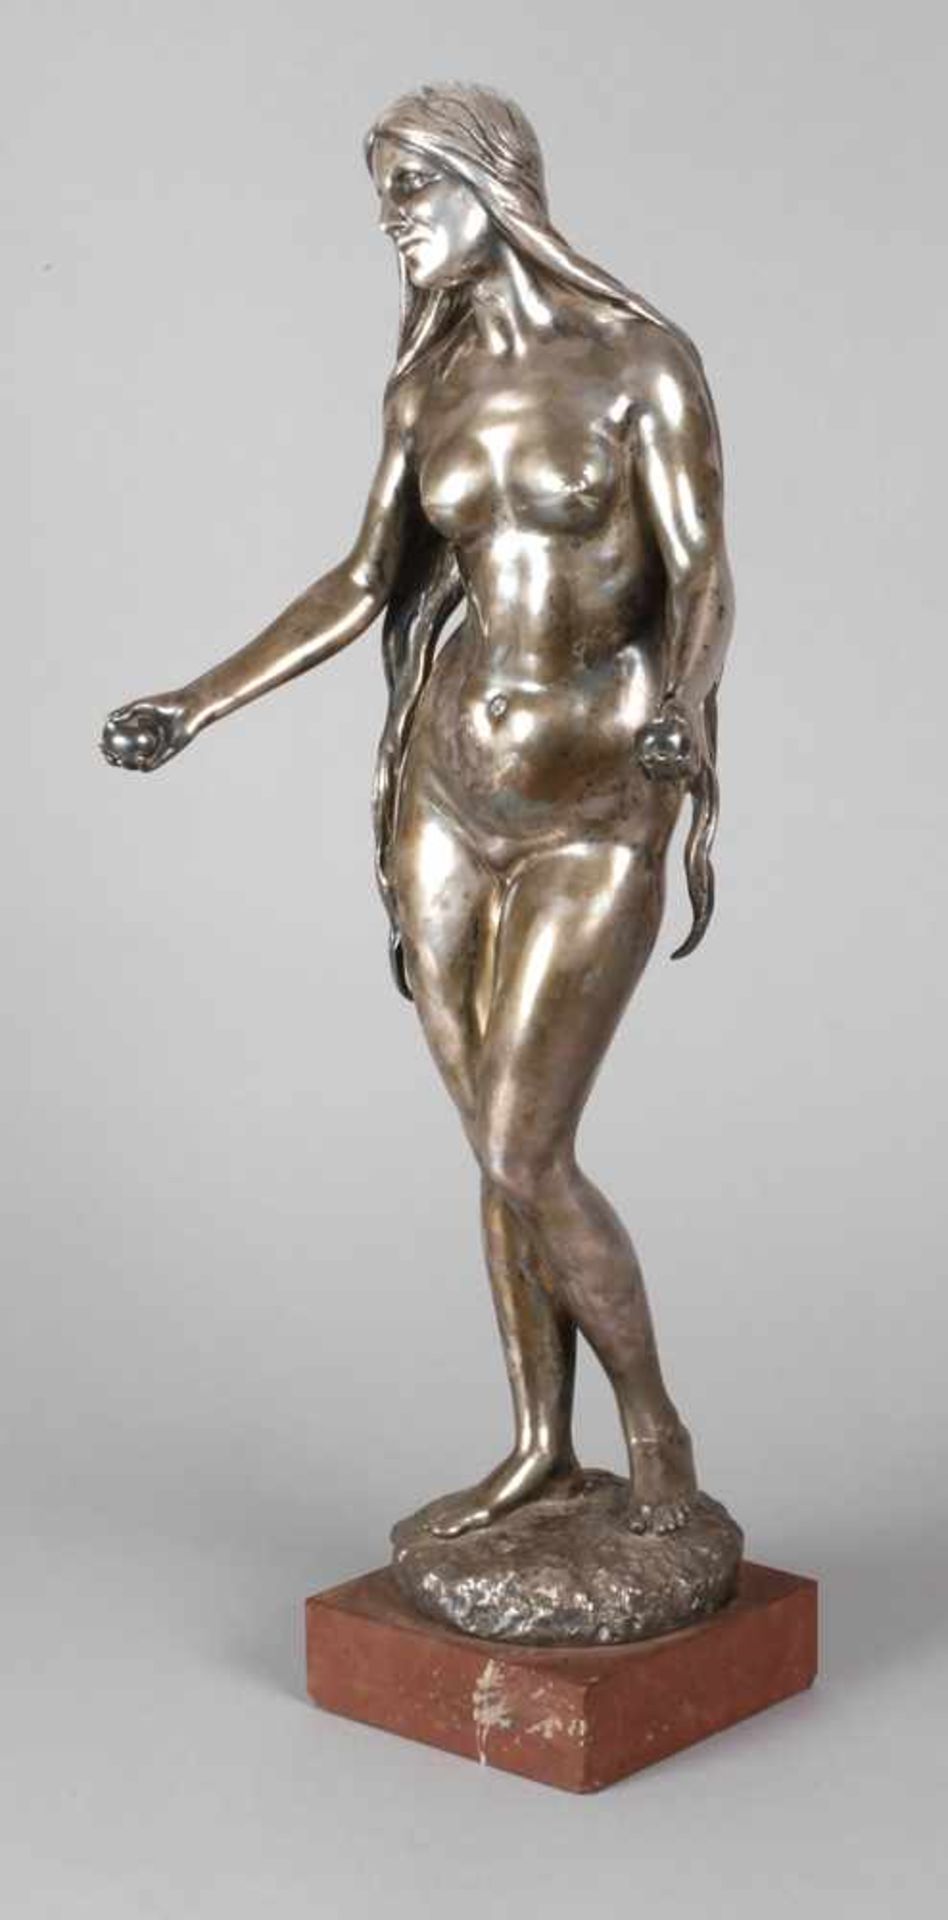 Adolf Fremd, "Pomona"datiert 1913 und signiert, Bronze versilbert, elegante Aktdarstellung der